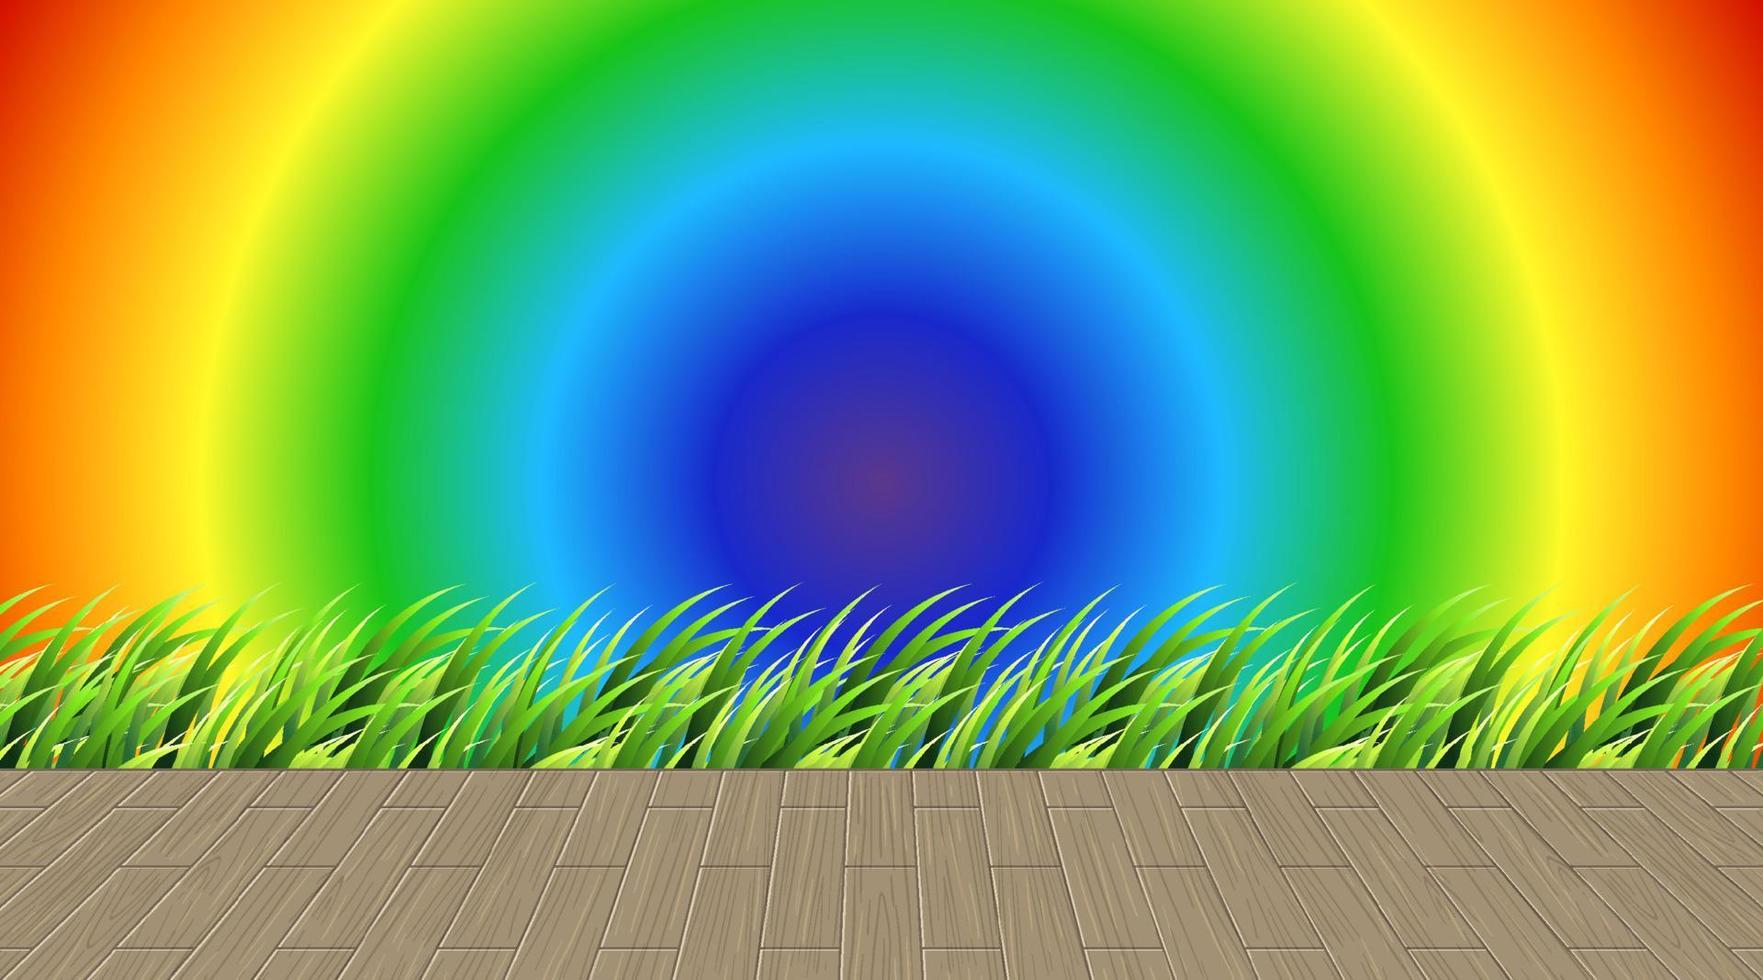 Gras- und Holzboden auf Regenbogensteigungshintergrund vektor